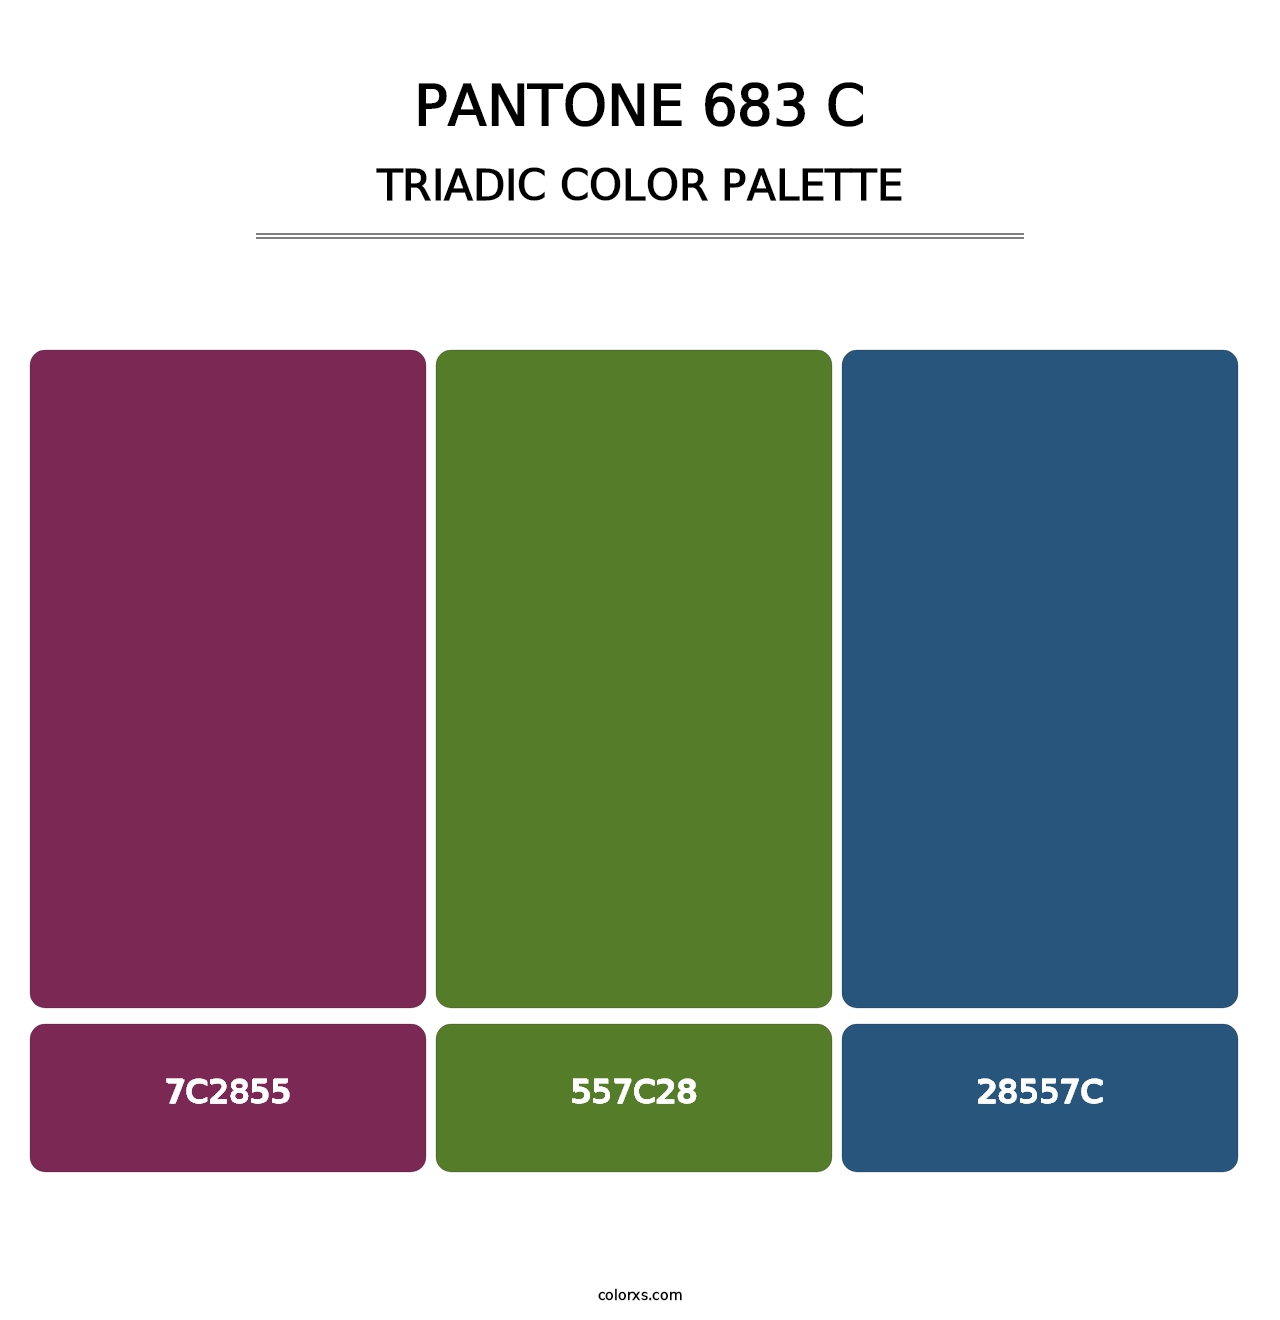 PANTONE 683 C - Triadic Color Palette